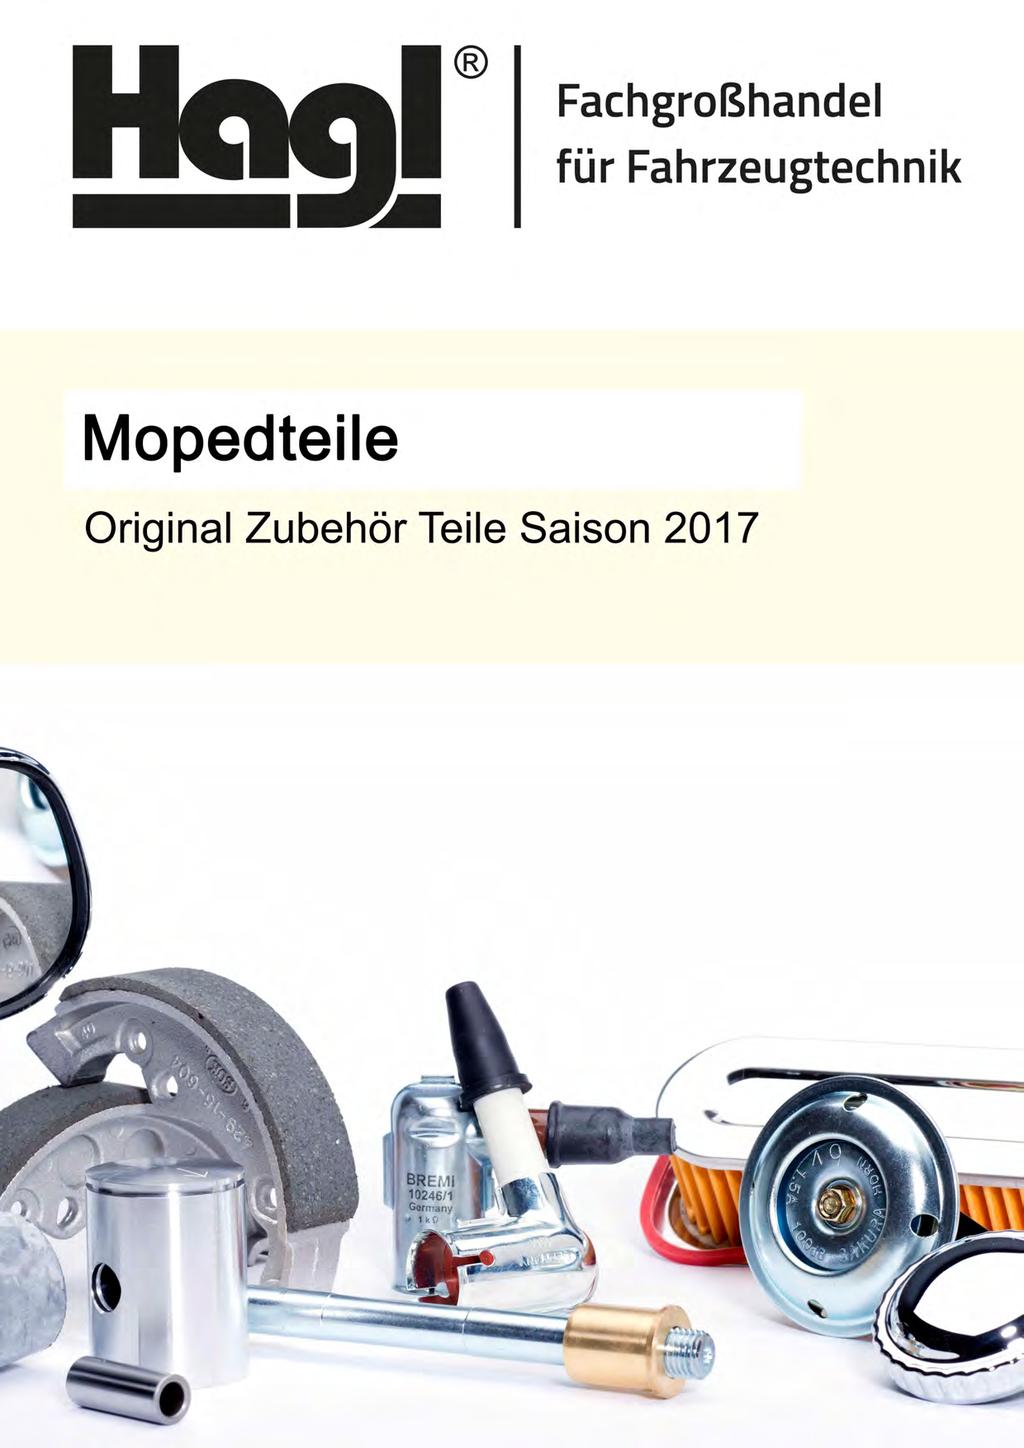 50/4 Mofa Moped Tuning 11er Ritzel verstärkt Neu Hercules MK Sachs 50 /3